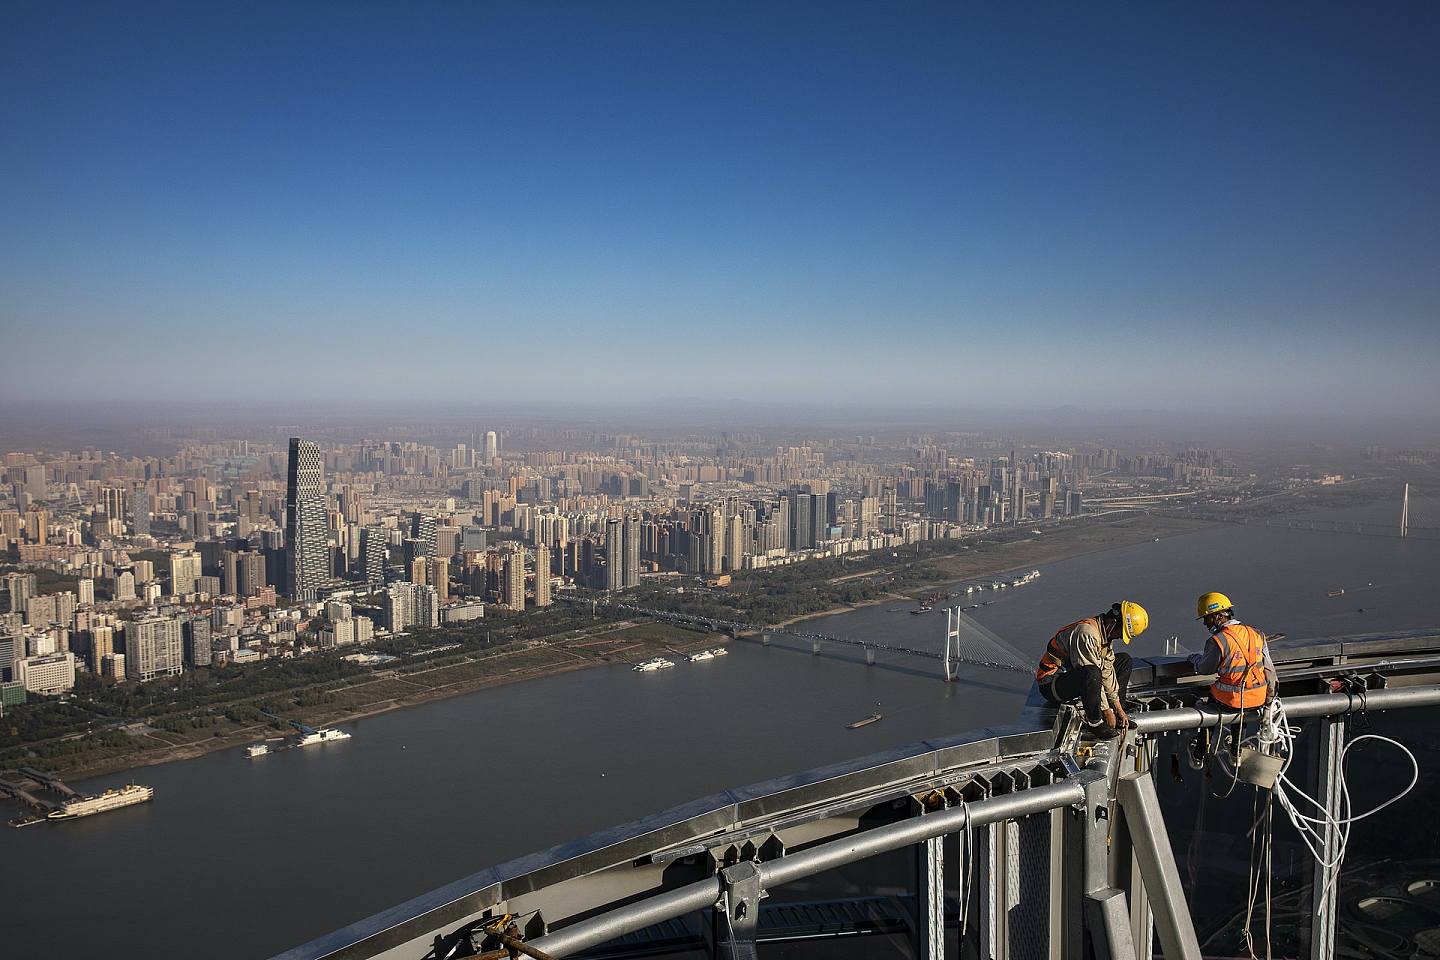 2021年11月15日，在湖北省武汉市的武汉绿地中心的楼顶上可以看到建筑工人。 武汉绿地中心将成为华中地区第一高楼，预计2022年竣工，高约476m，为全球第15高楼。 （Getty Images）